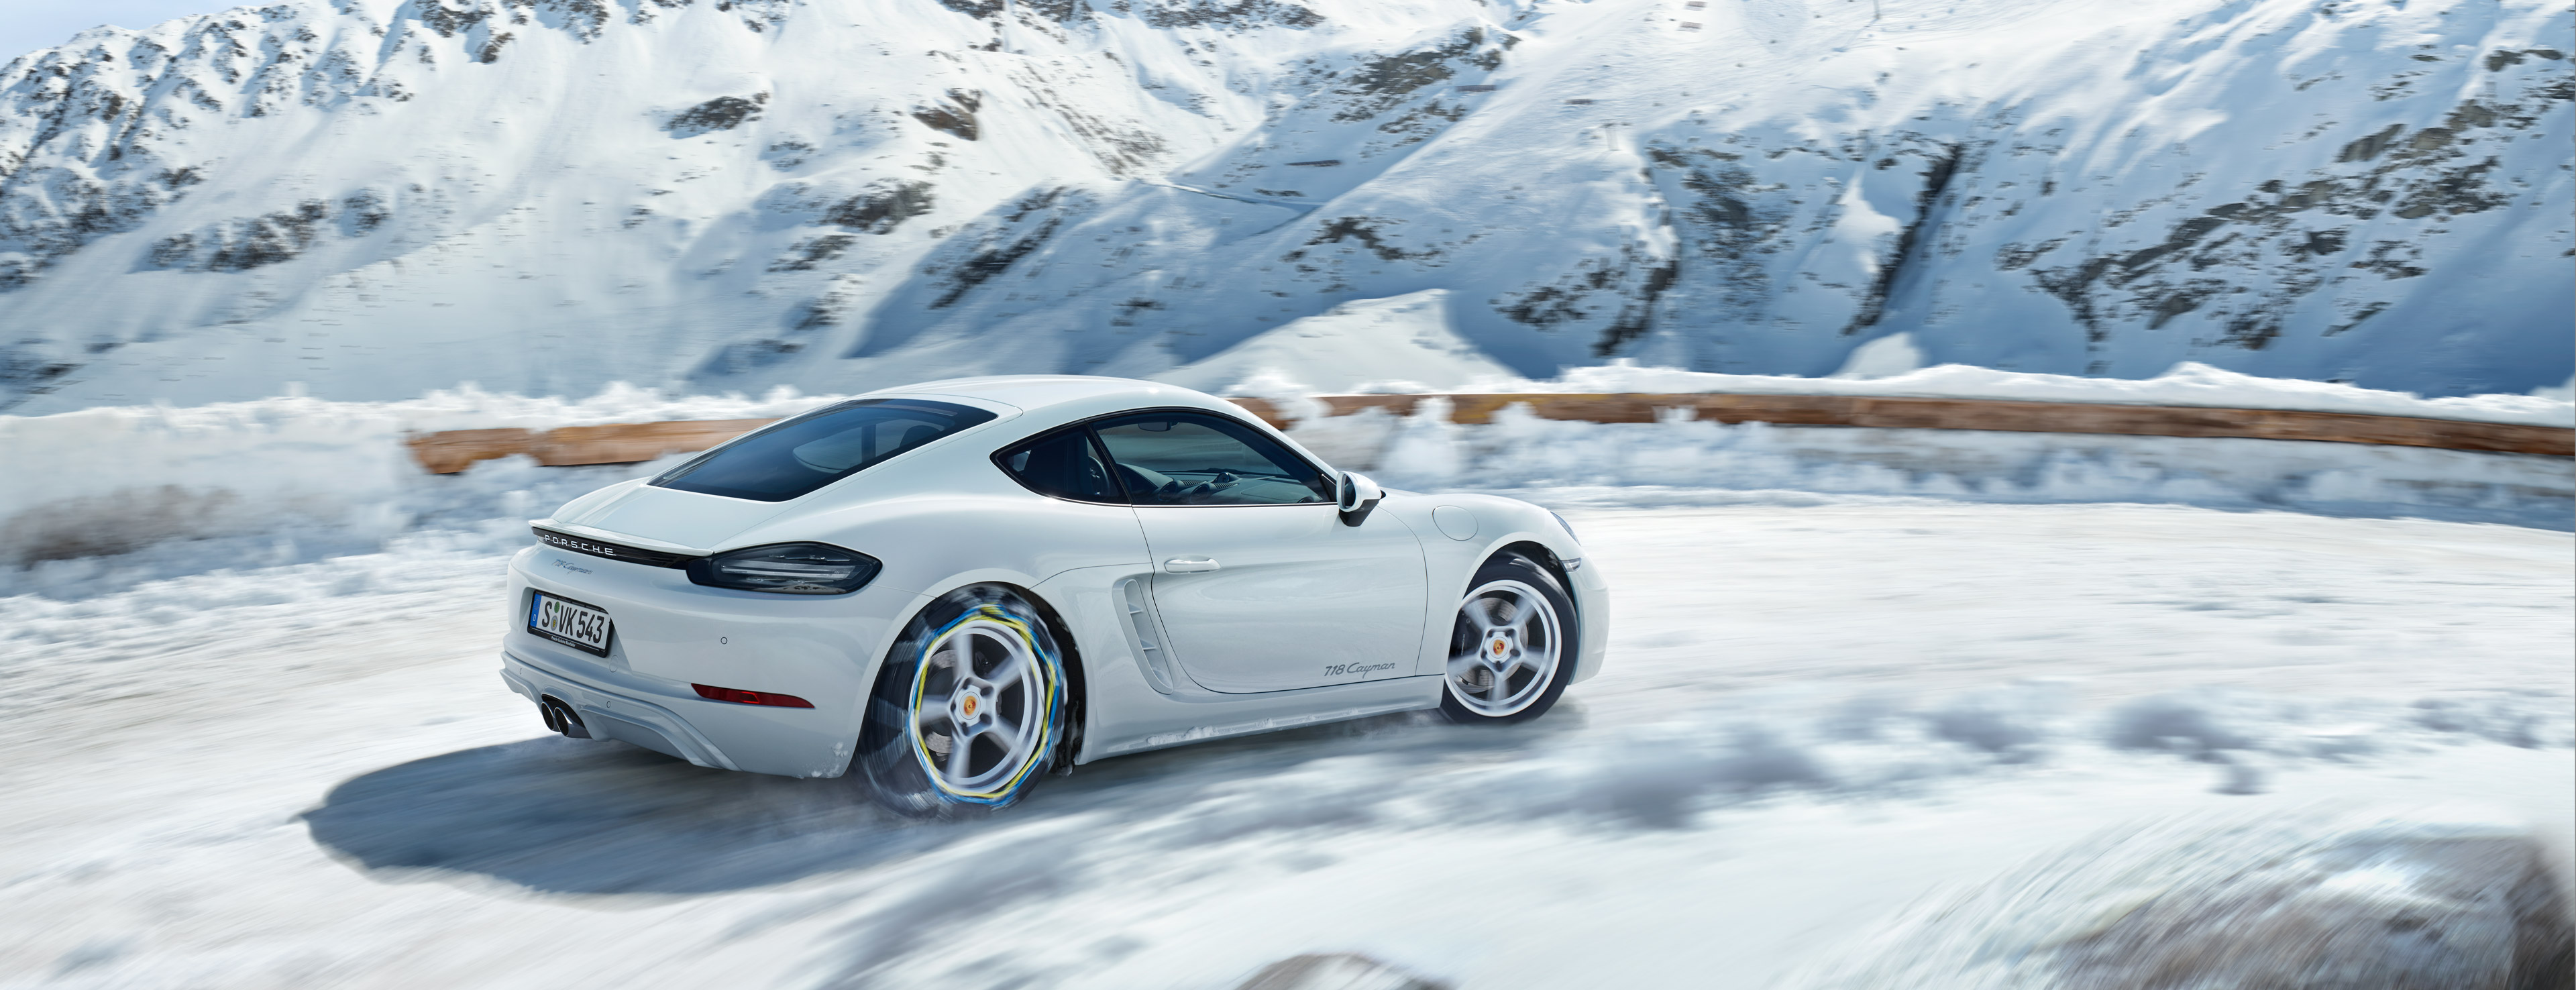 Porsche Winterräder für Ihren 718 - Porsche Deutschland